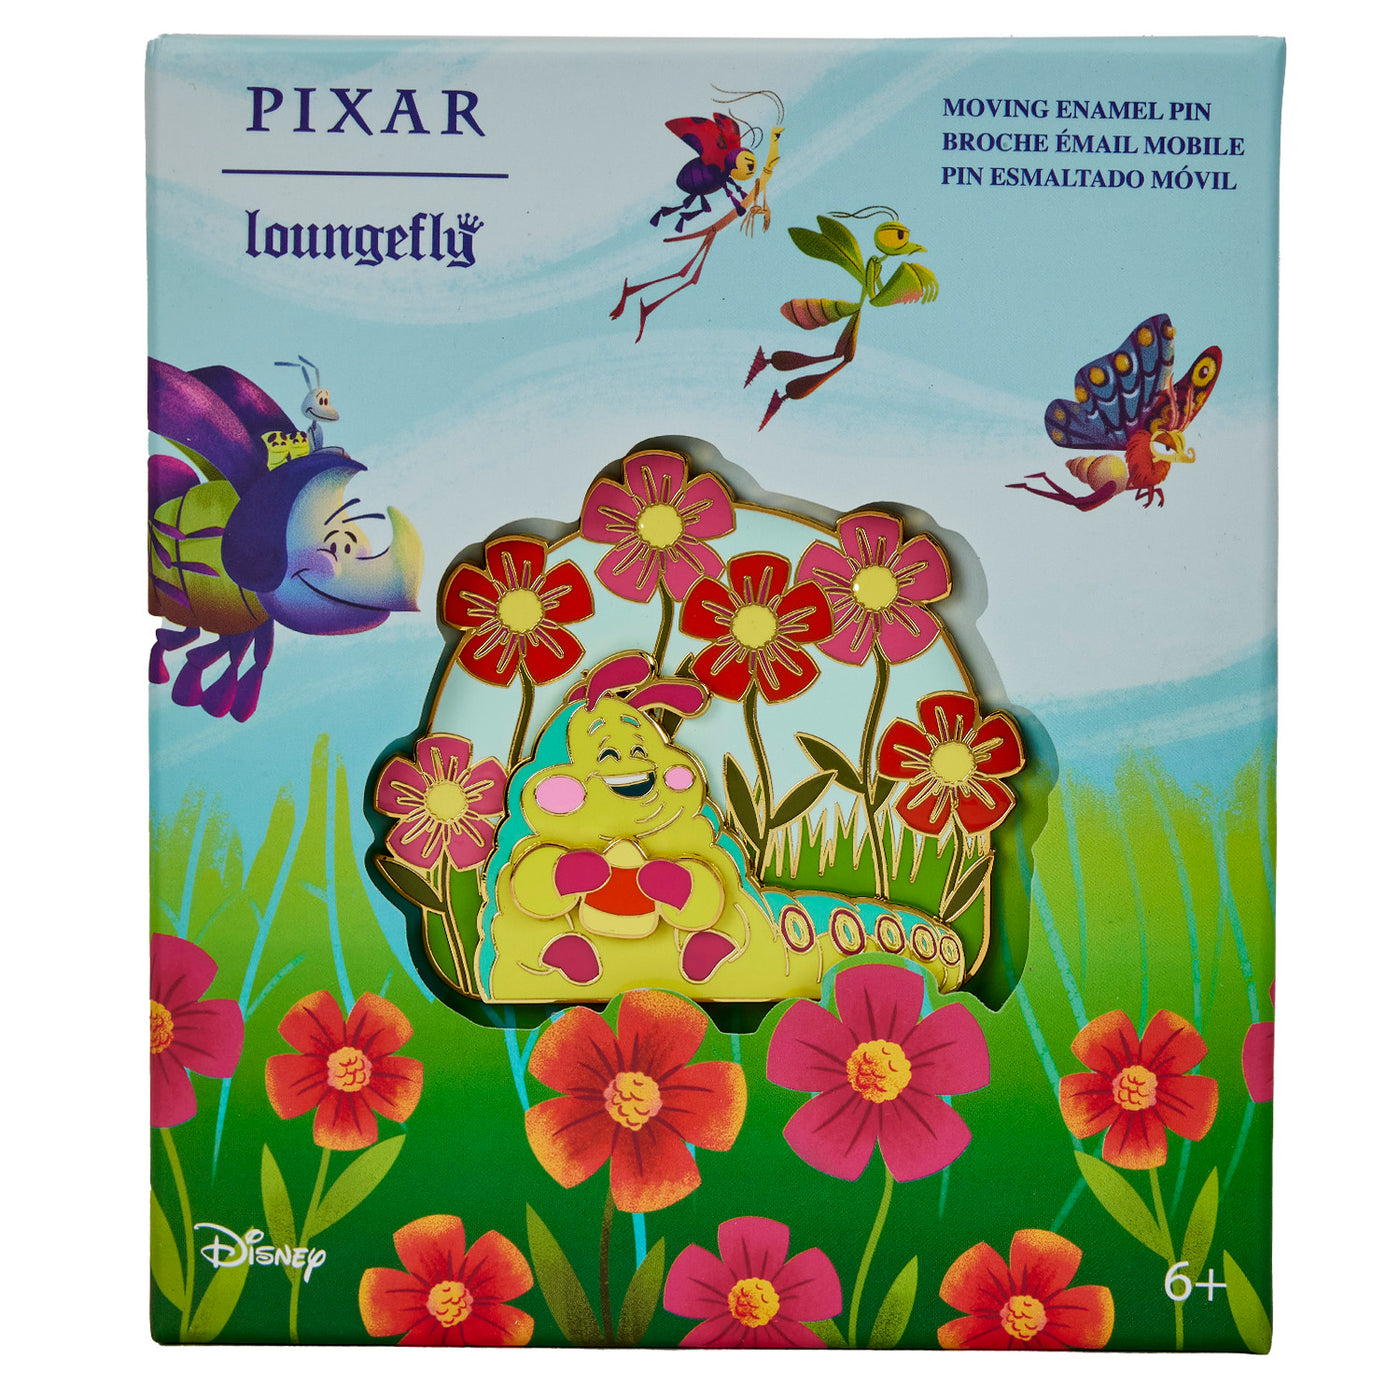 Loungefly Disney Pixar A Bug's Life 3" Collector Box Pin